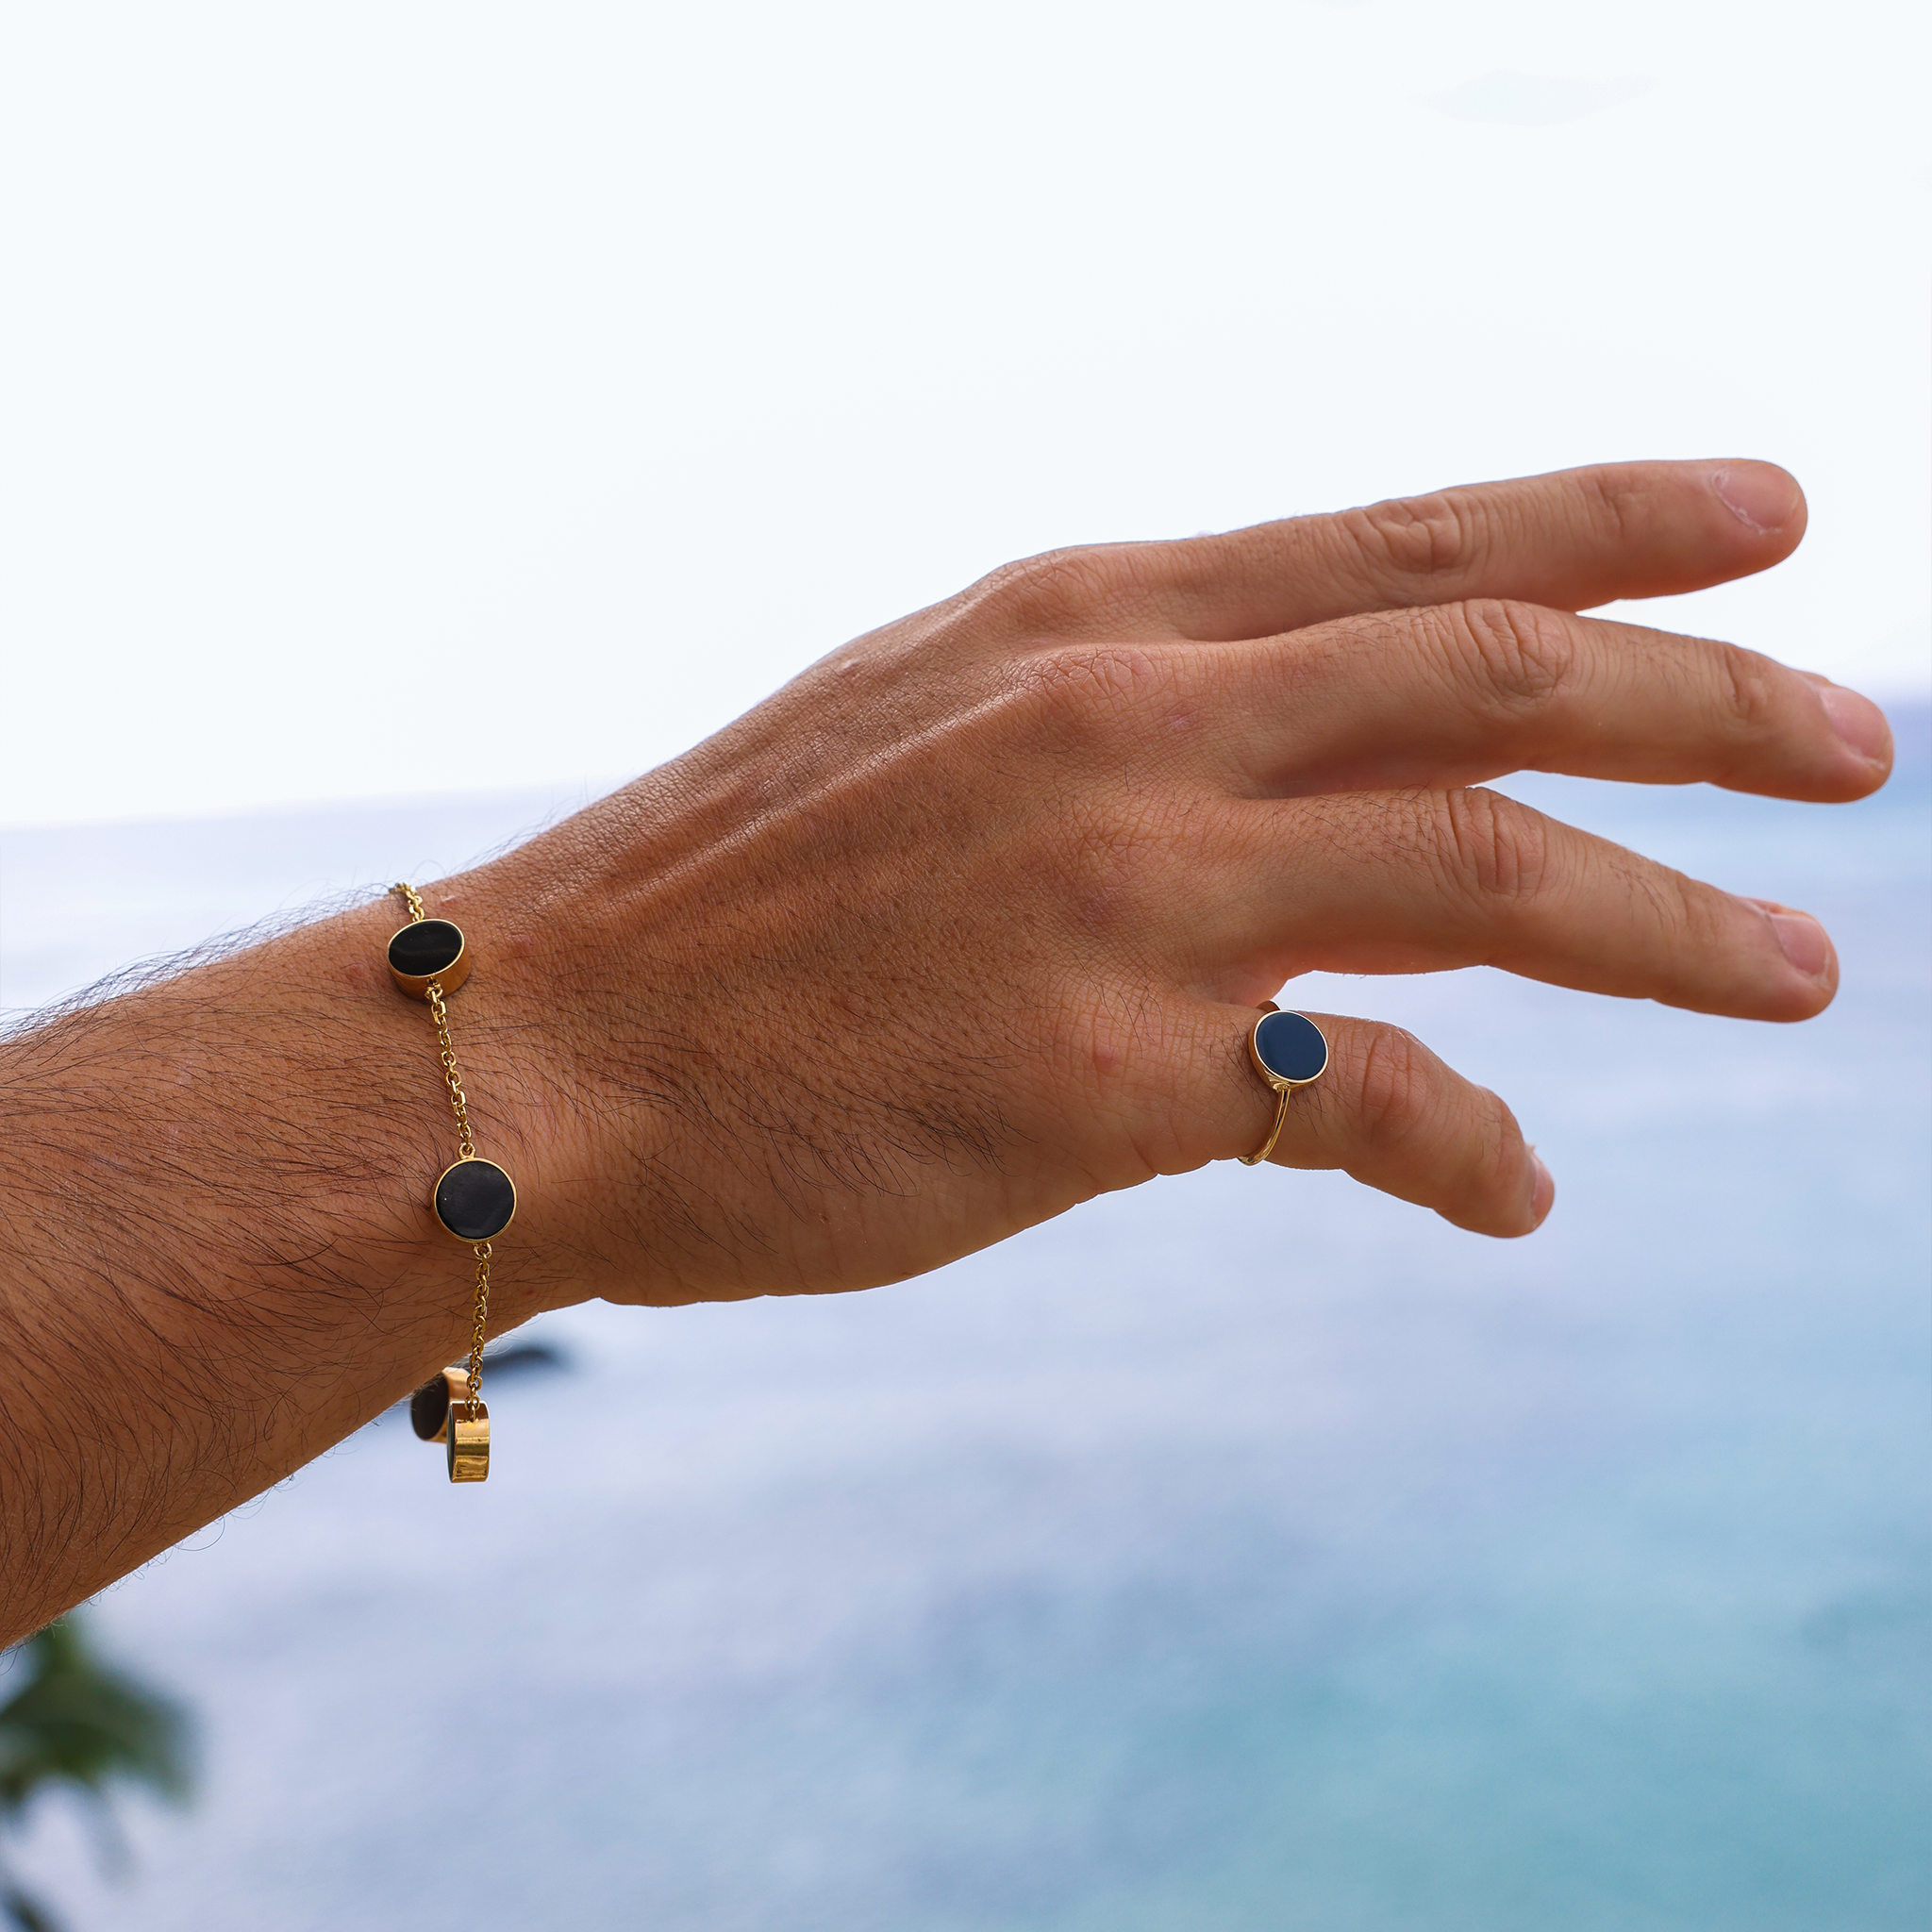 Eclipse Black Coral Bracelet in Gold - 9mm - Size 7.25-8"